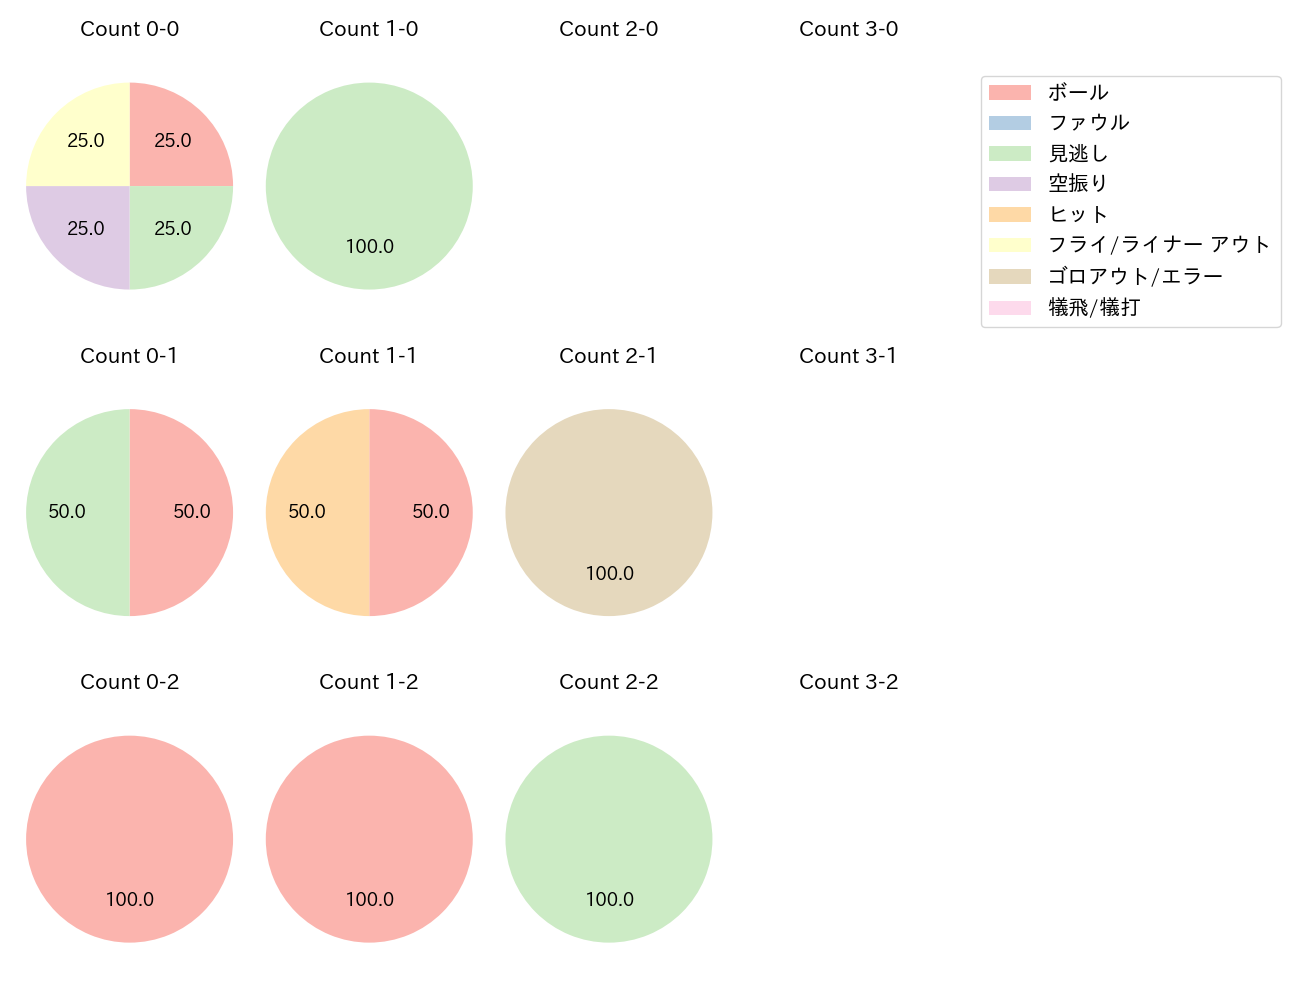 田中 和基の球数分布(2022年8月)